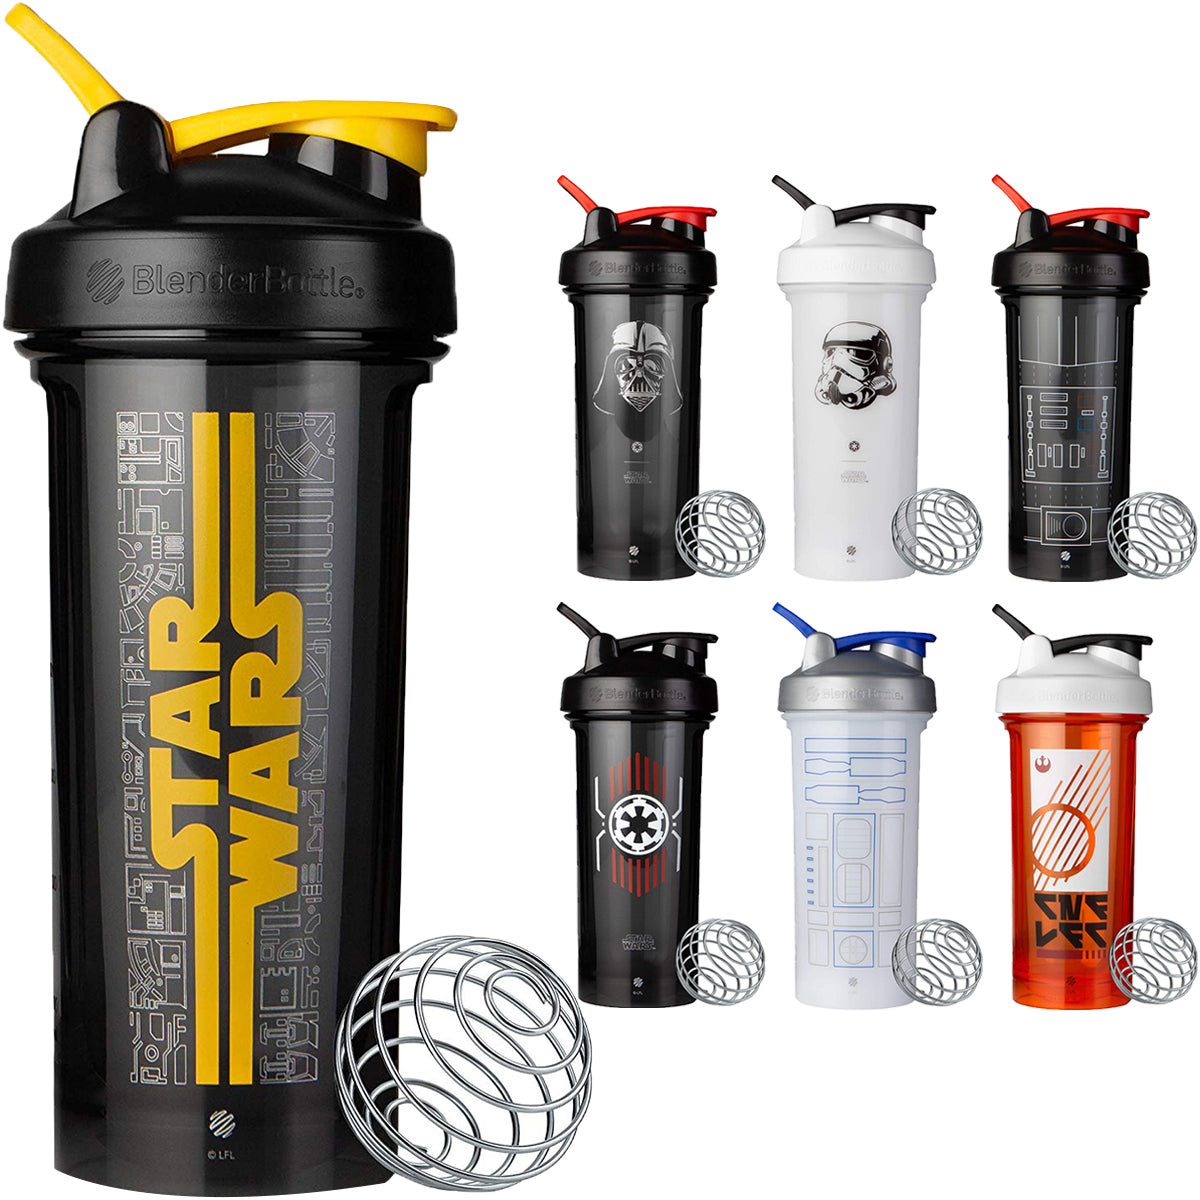 Blender Bottle Star Wars Pro Series 28 oz. Shaker Mixer Cup with Loop Top Blender Bottle